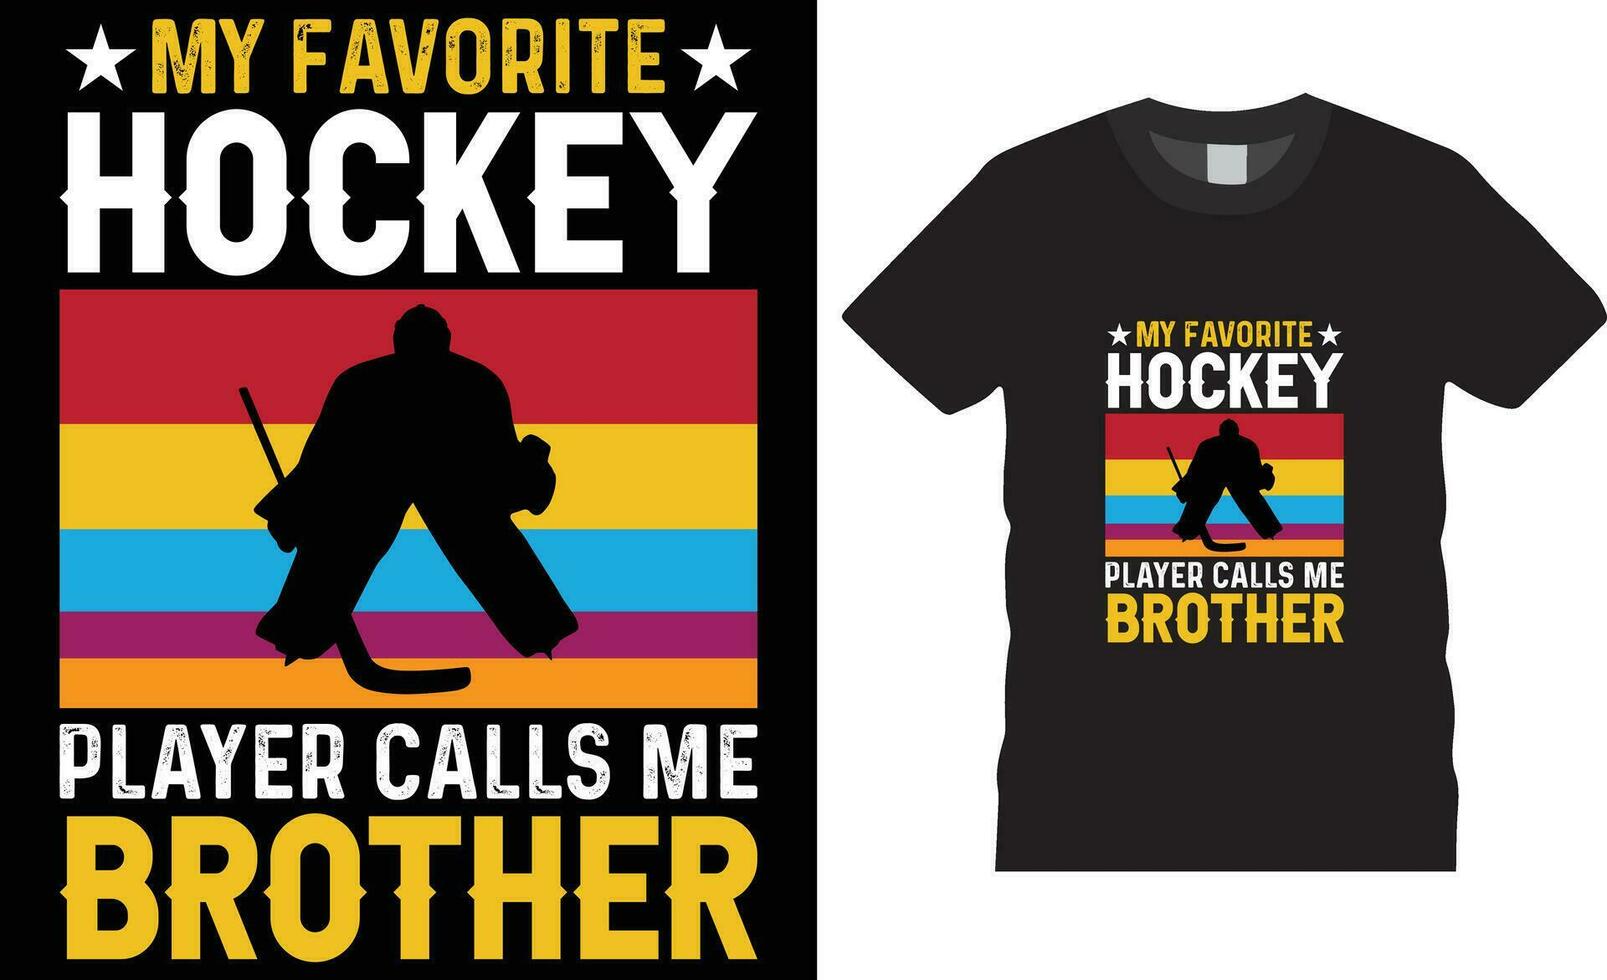 hockey typografi t skjorta design vektor skriva ut affisch mall.min favorit hockey spelare samtal mig bror